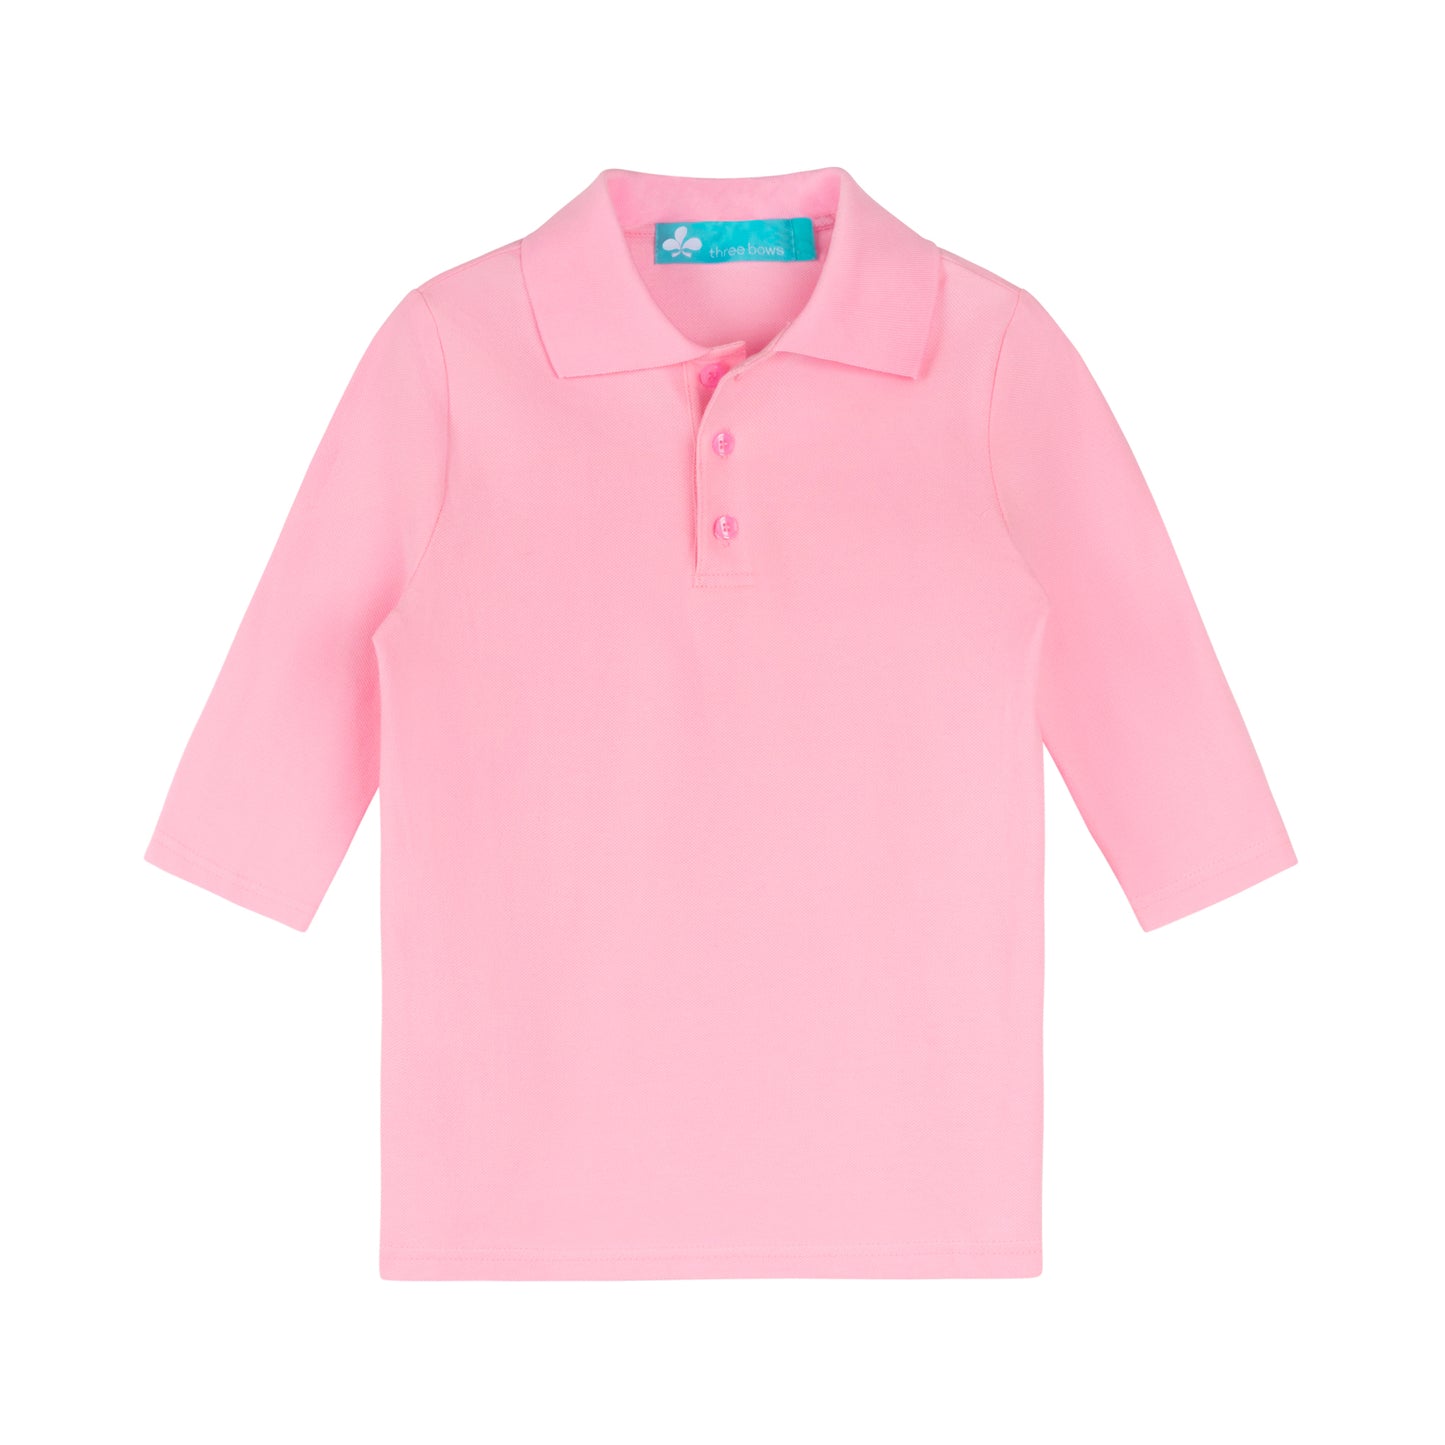 Girls Polo T-shirt 3/4 Sleeve- Light Pink